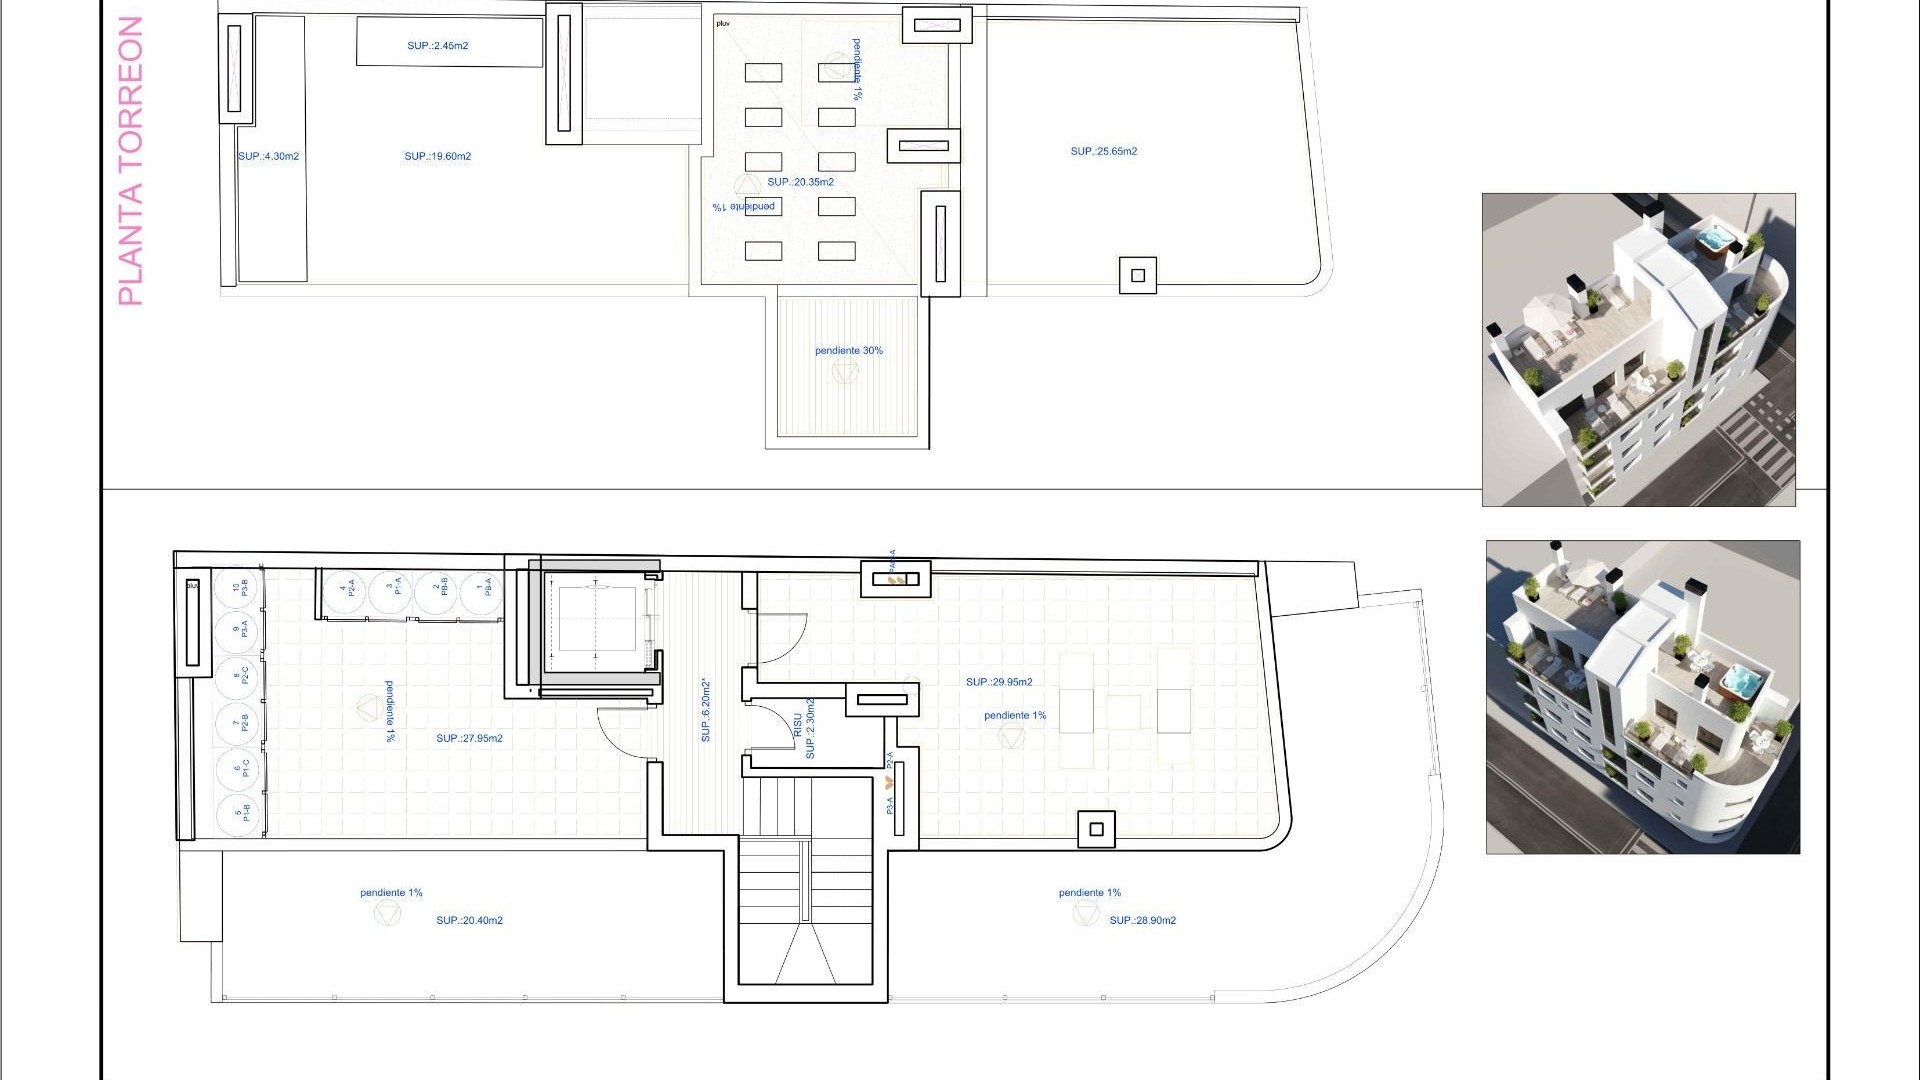 Nye leiligheter og toppleiligheter med moderne design i Torrevieja, 1/2 soverom, 1/2 bad, stort felles solarium,  åpen kjøkkenløsning og stue